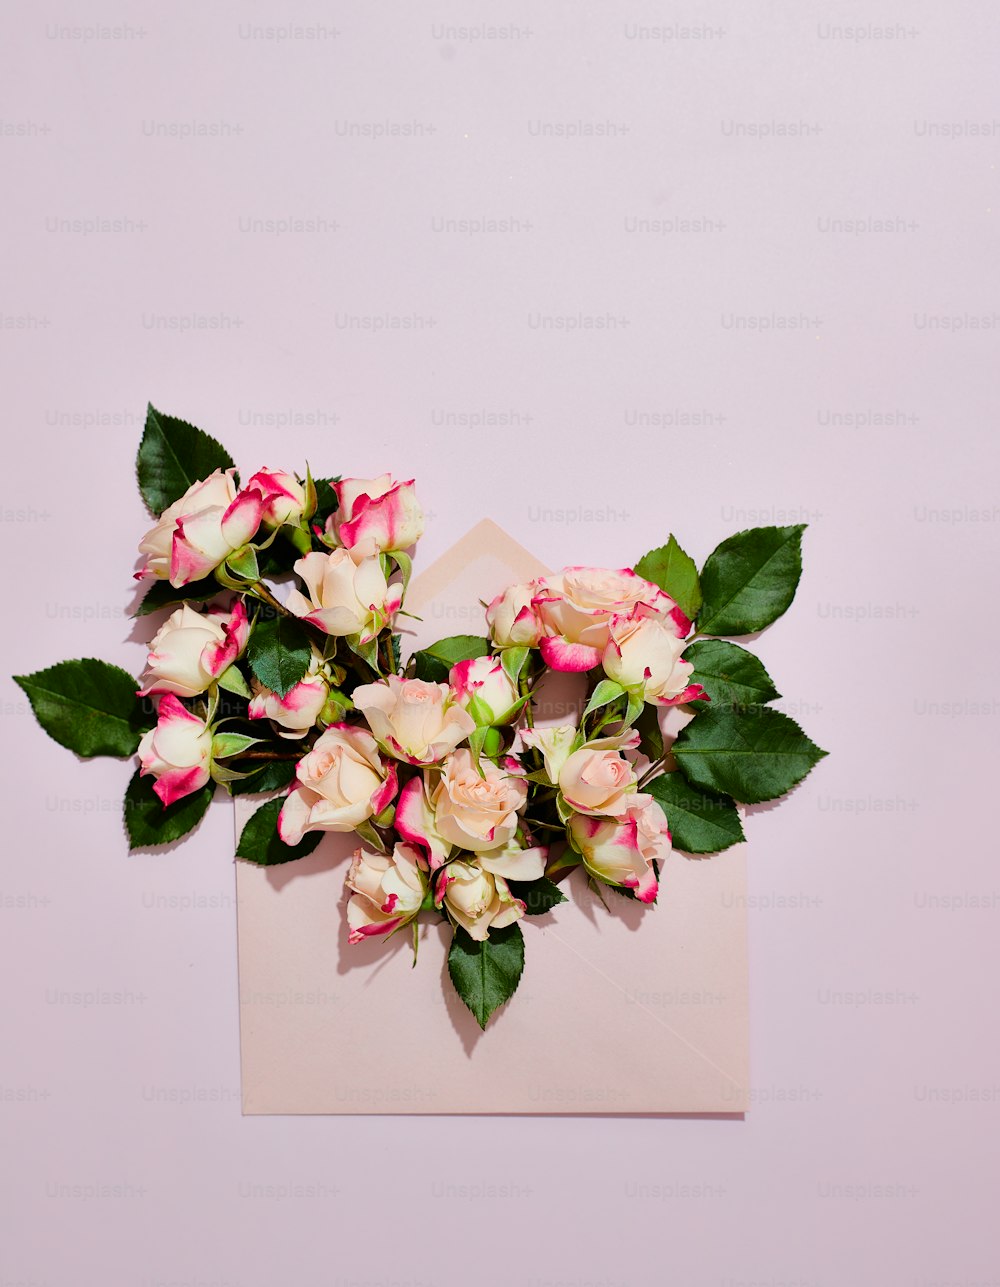 ein Strauß rosa und weißer Blumen, der auf einem Blatt Papier sitzt